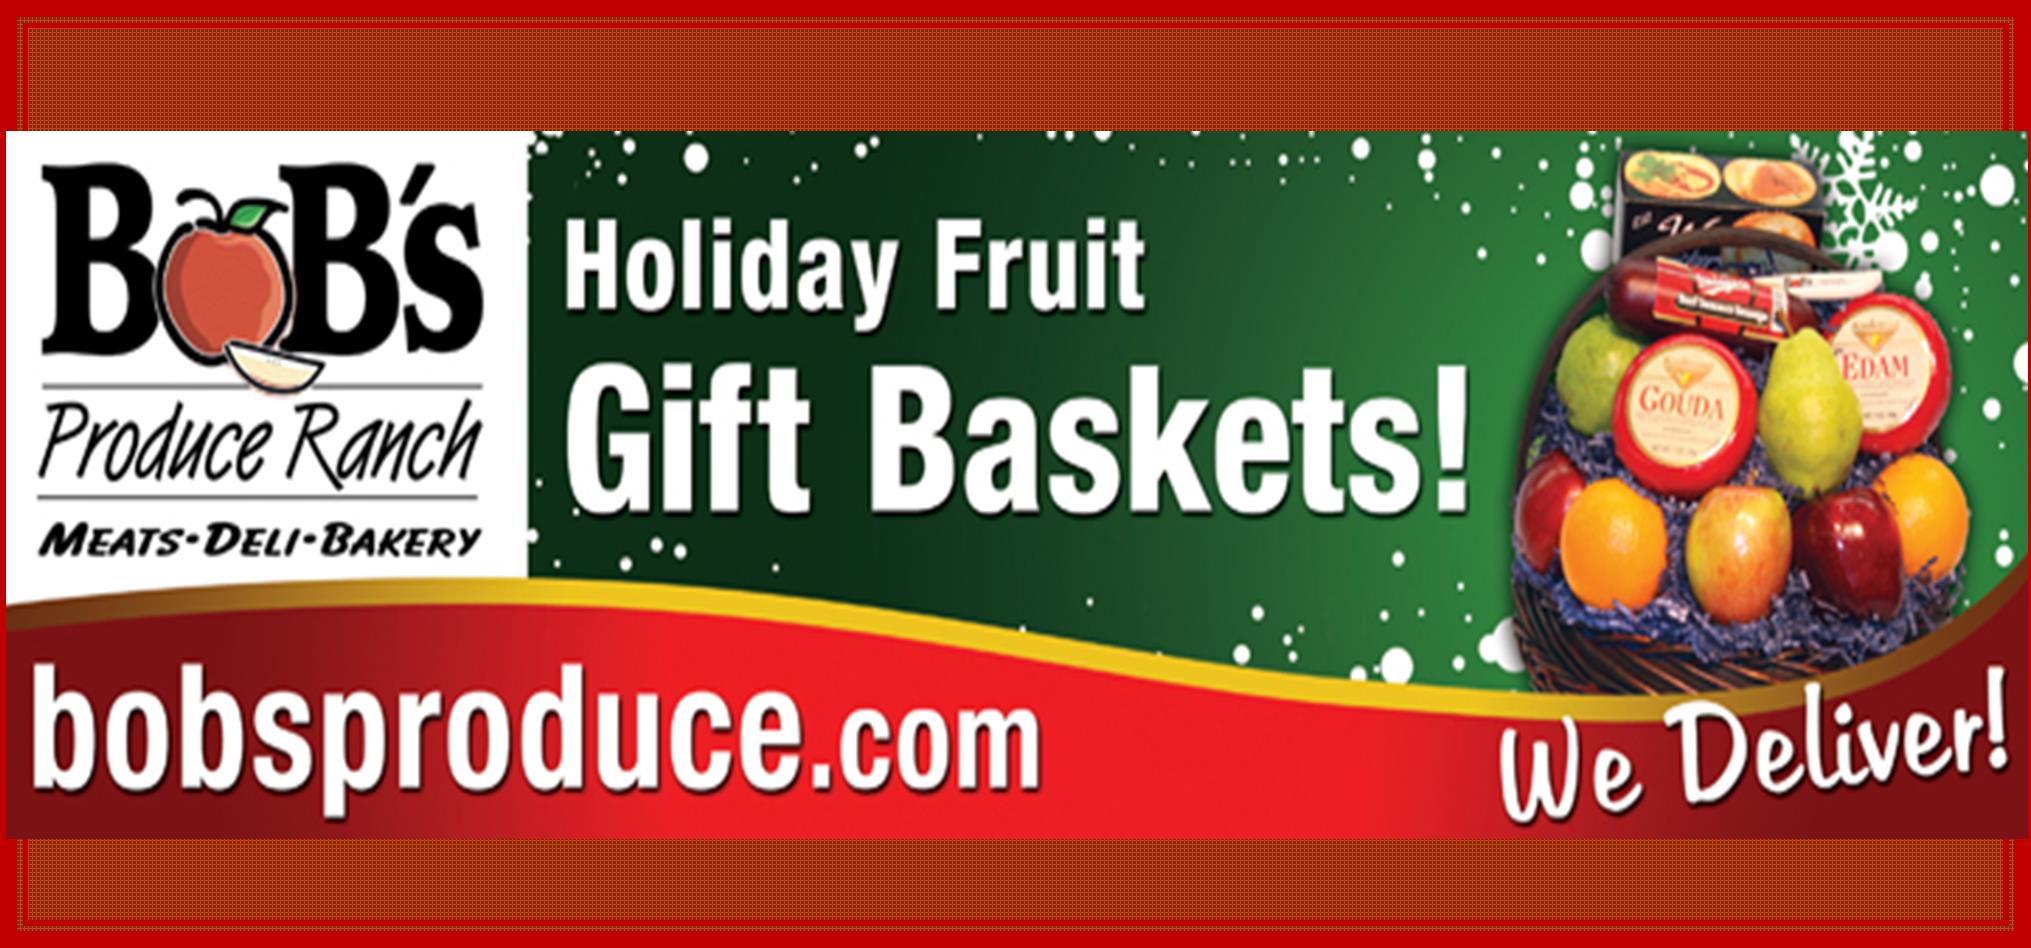 Gift Baskets We Deliver.jpg